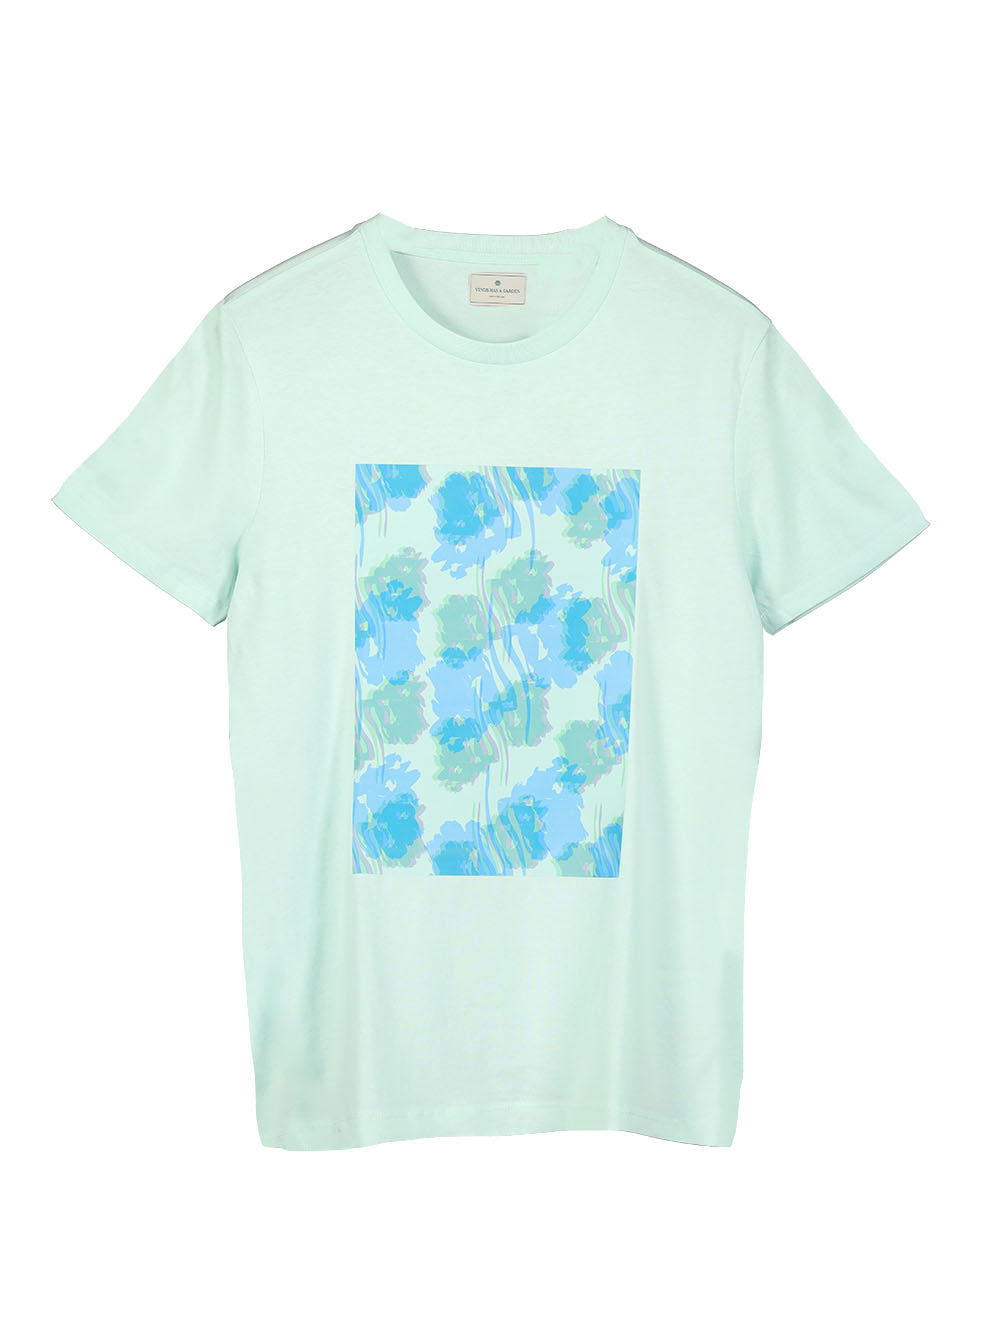 Flower Affair in Mint T-shirt